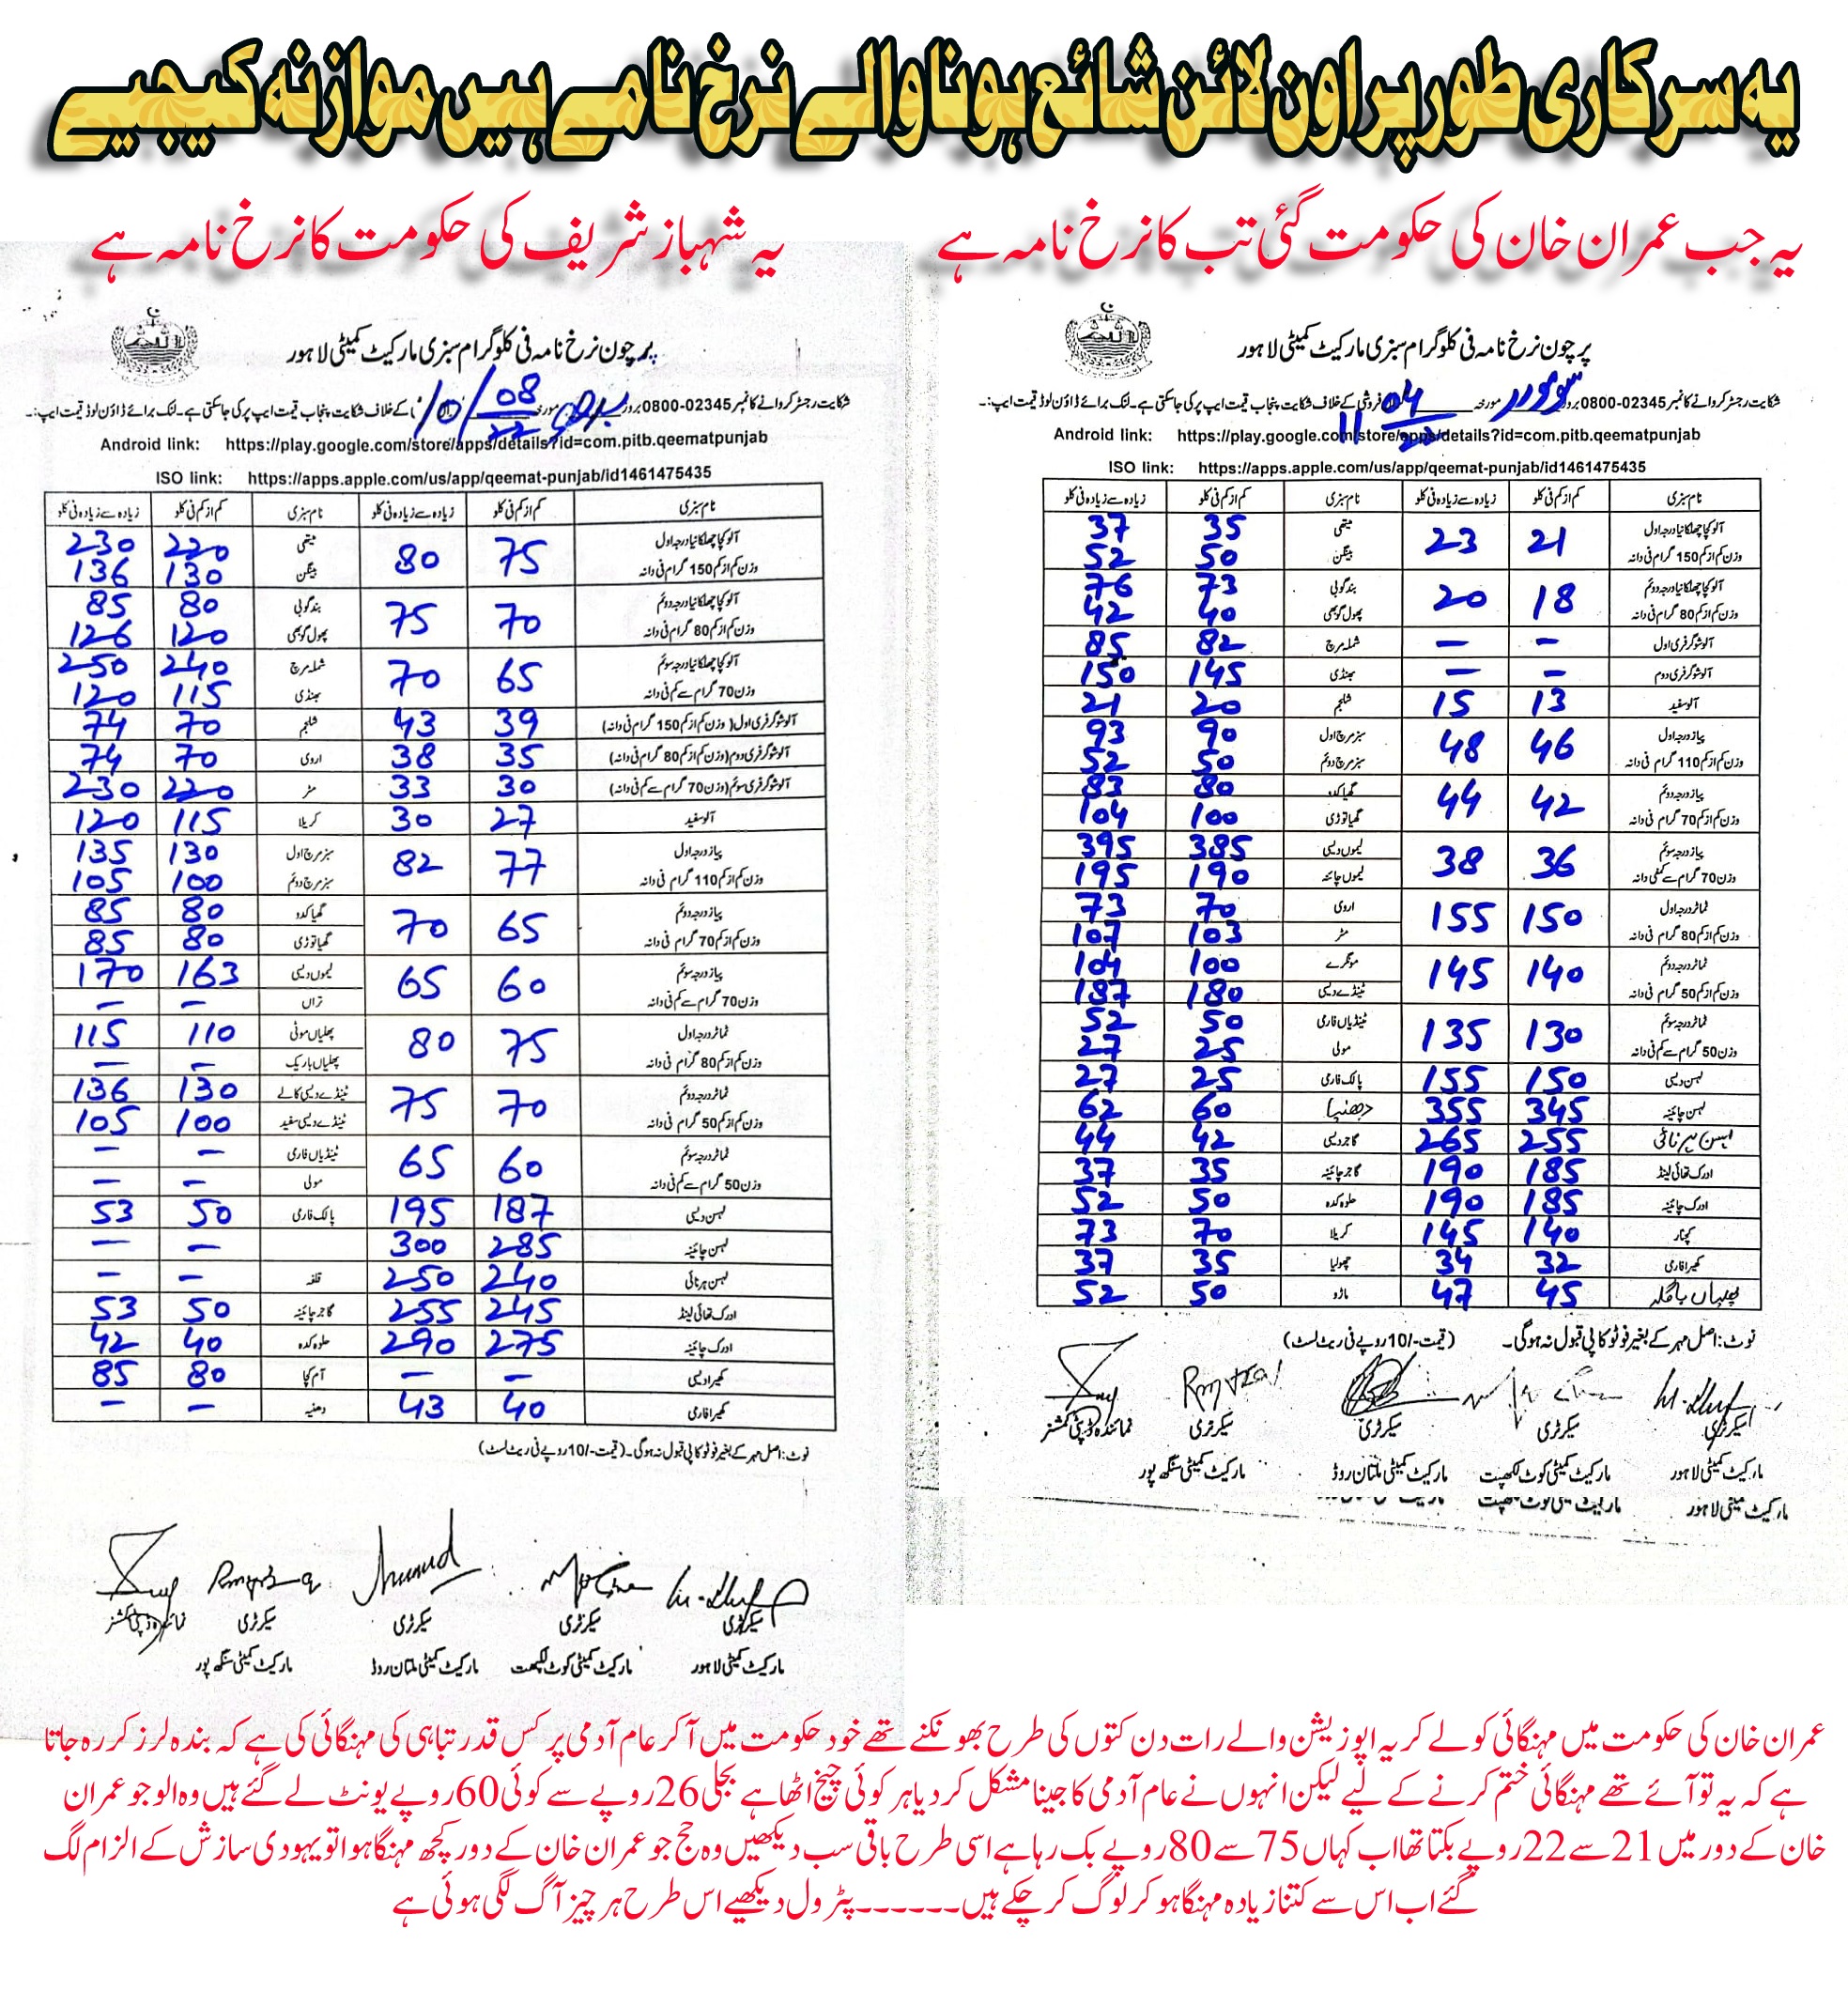 rate-imtan-shabaz-sarif-gov-2.jpg